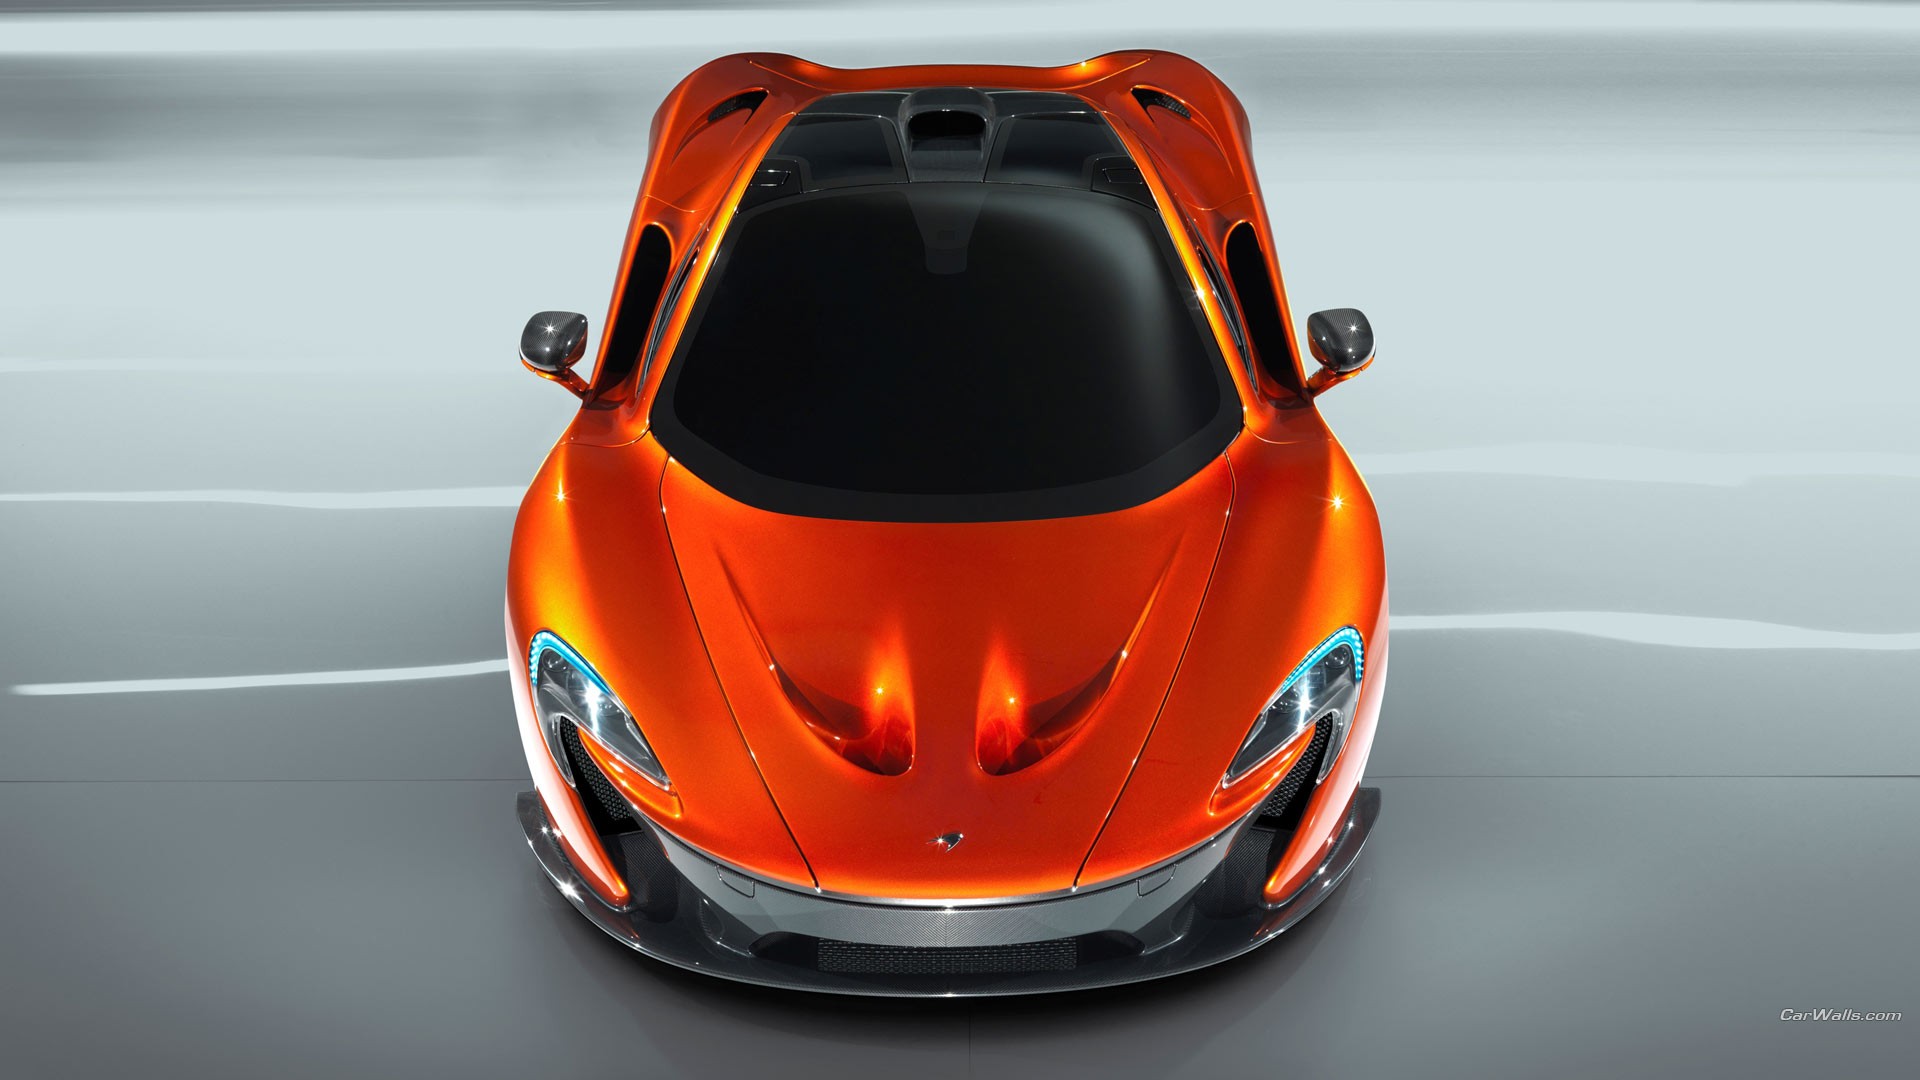 McLaren P1 Wallpaper